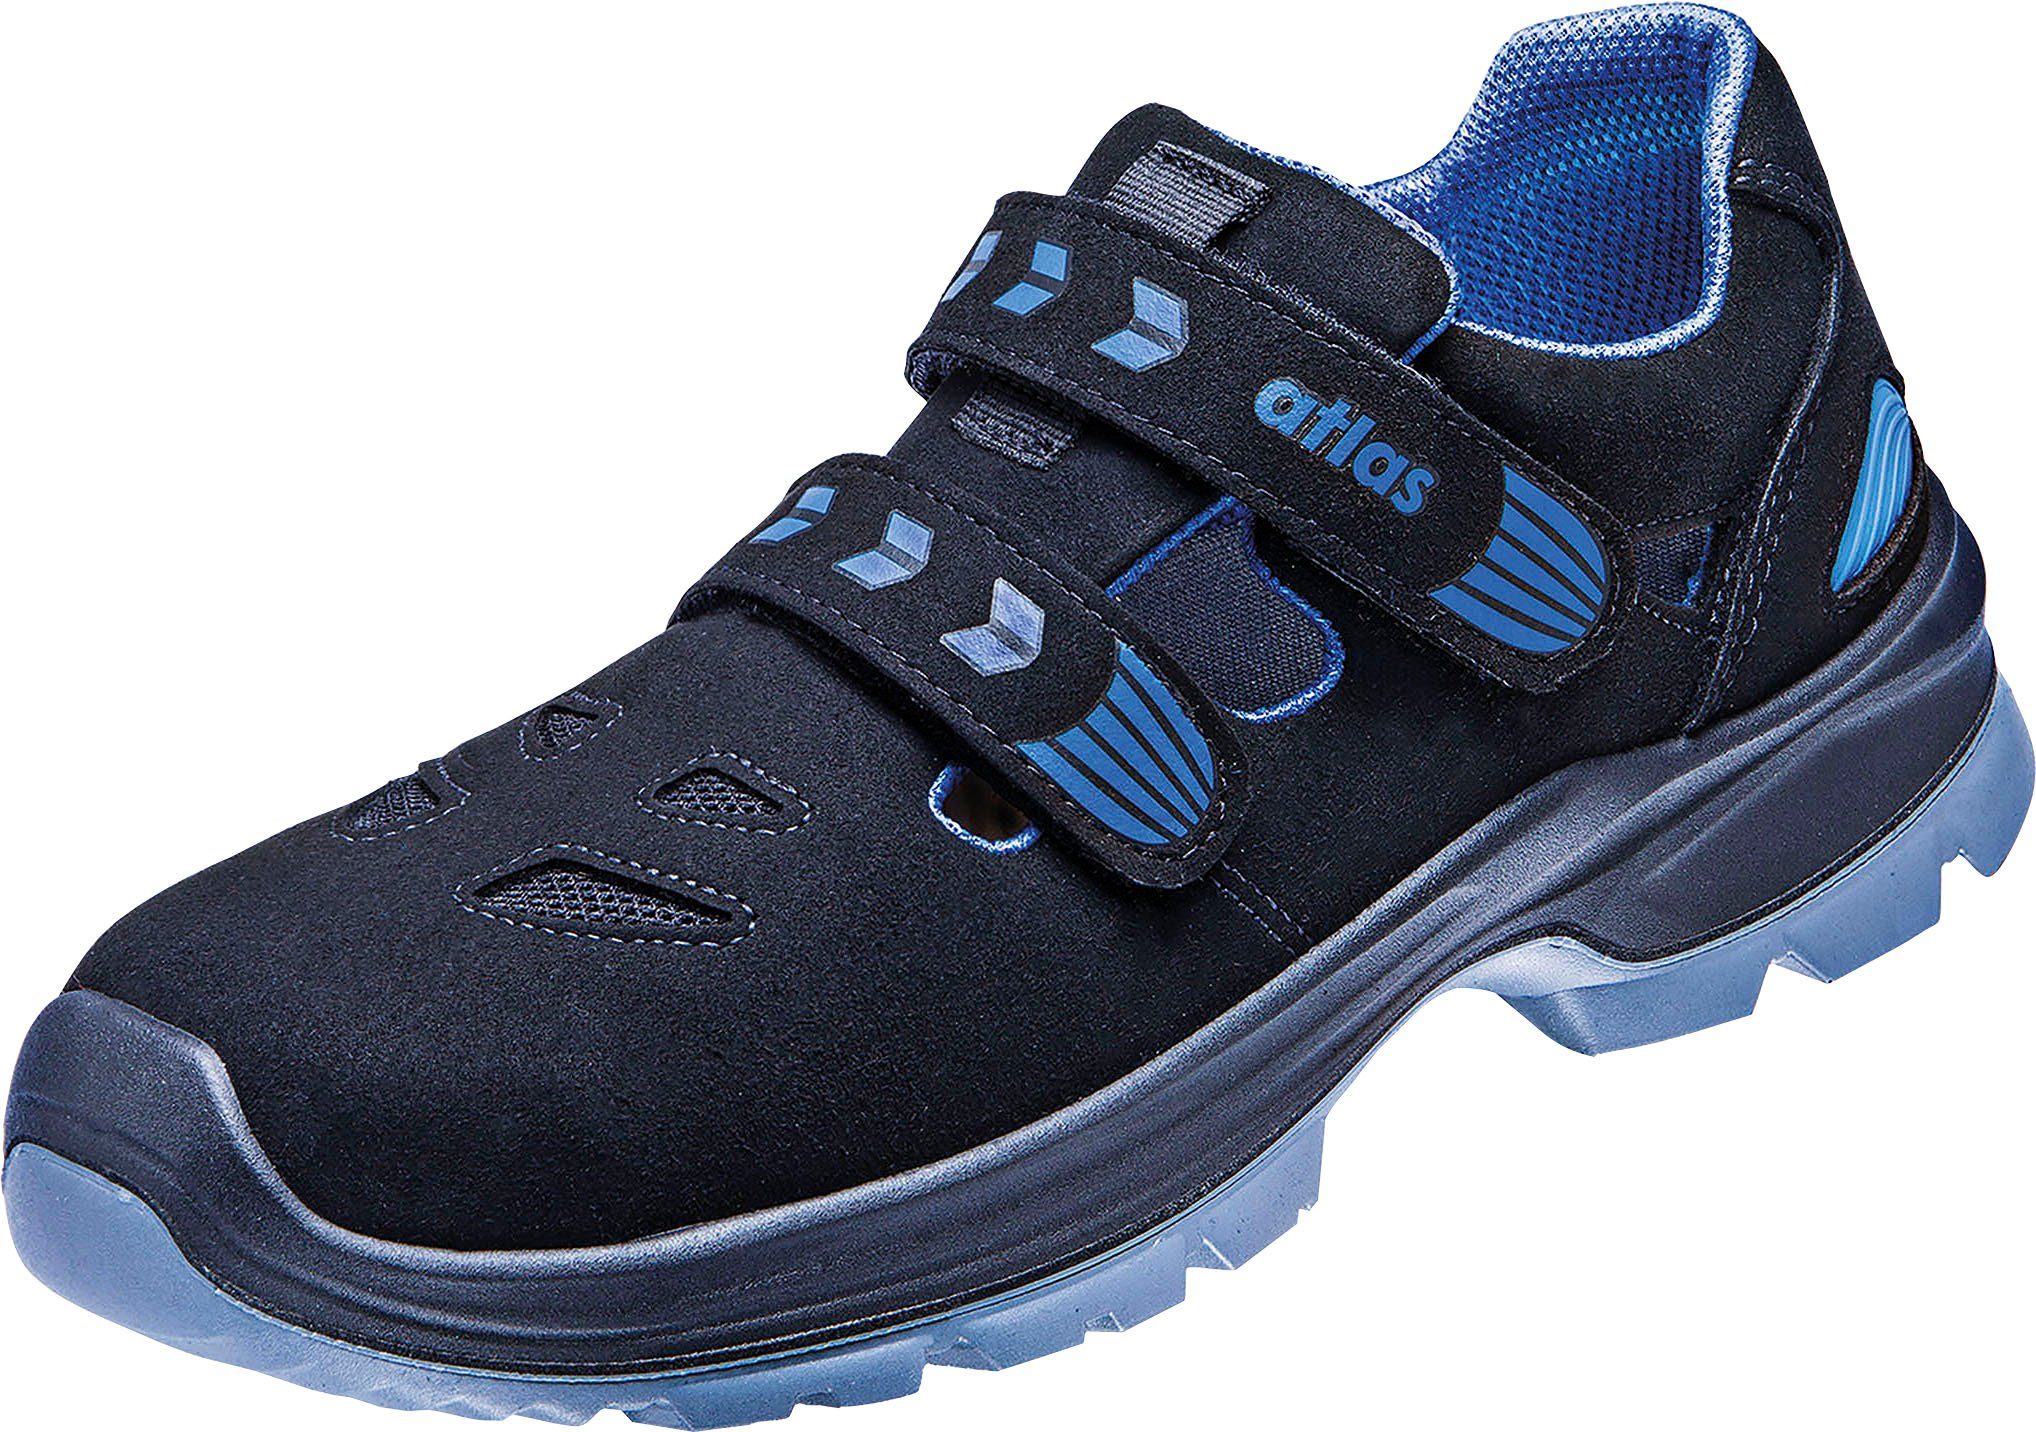 Atlas Schuhe Schuhweite Sicherheitsklasse 14, S1 Sicherheitsschuh Ergo-Med 360 Sandale